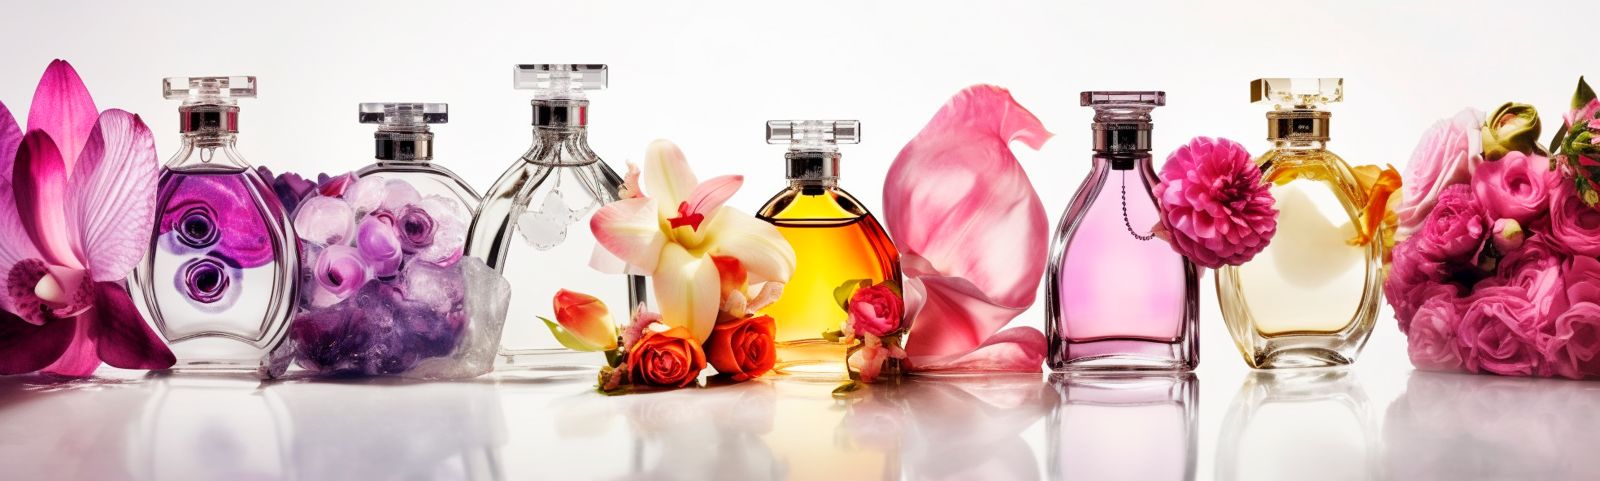 Perfumy Chloe: które najładniejsze, jakie są rodzaje, opinie i gdzie kupić oryginalne?